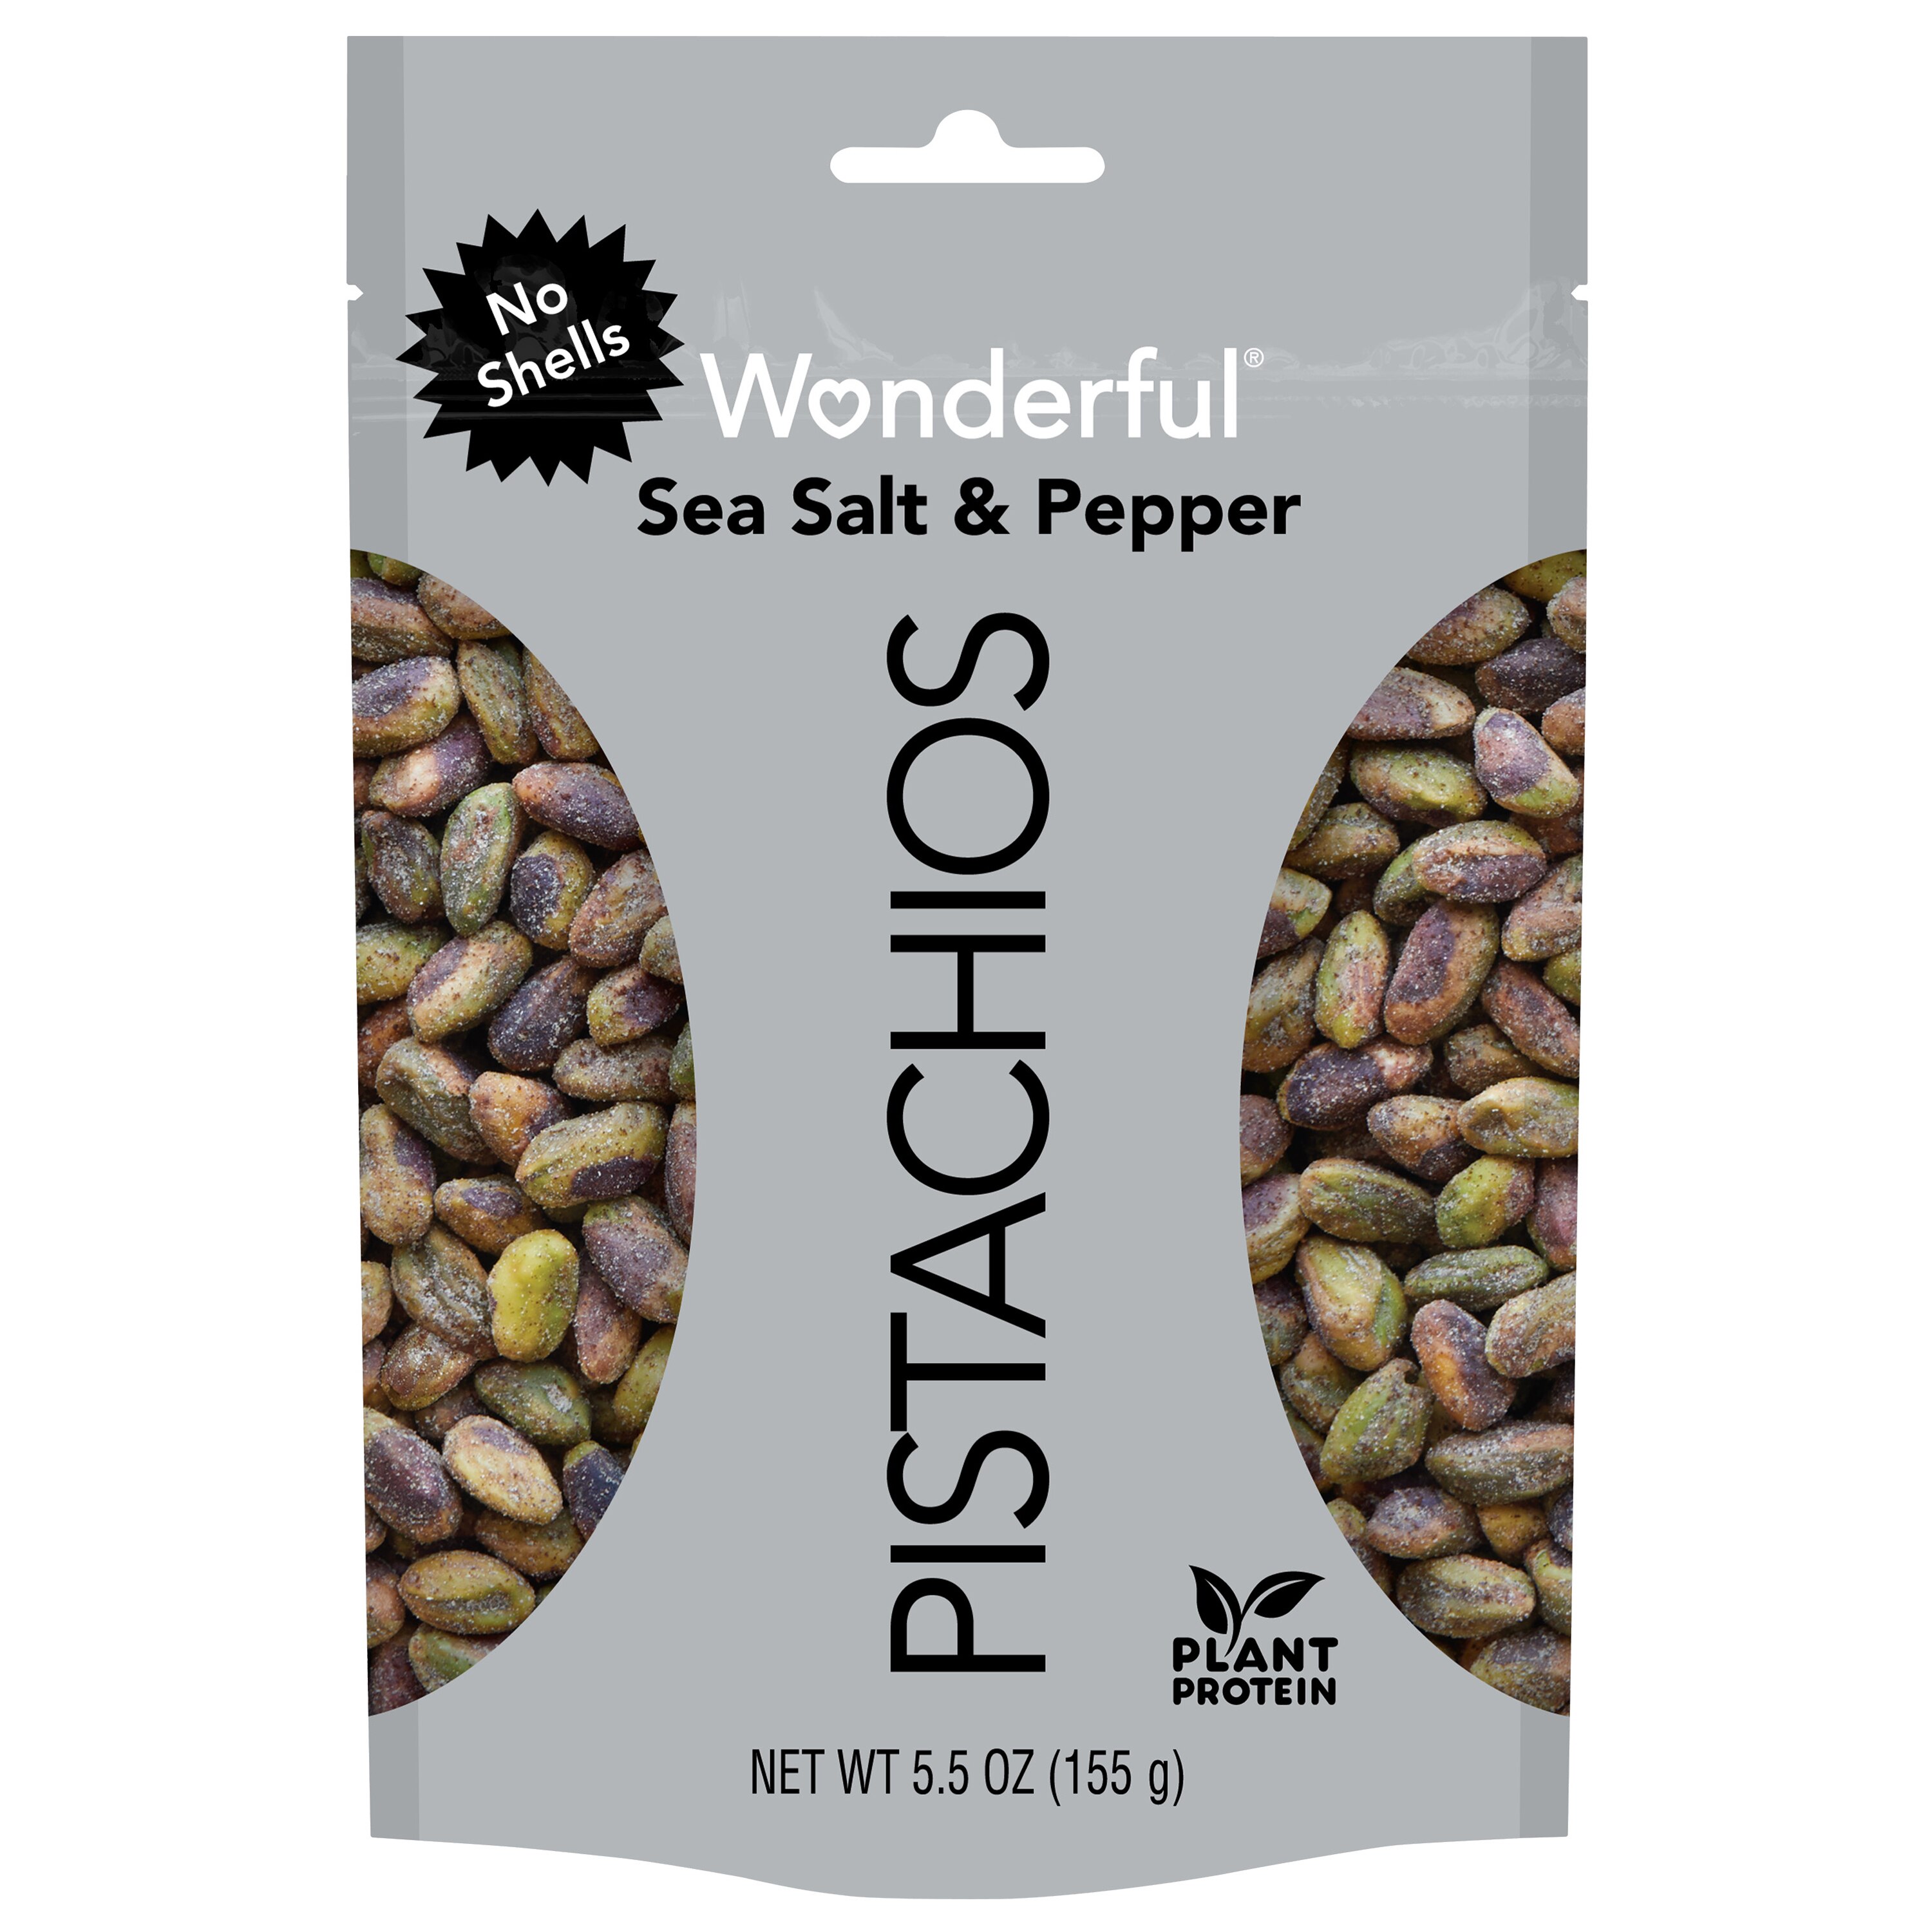 Wonderful Pistachios, No Shells, Sea Salt & Pepper Flavored Nuts, Resealable Pouch, 5.5 Oz , CVS